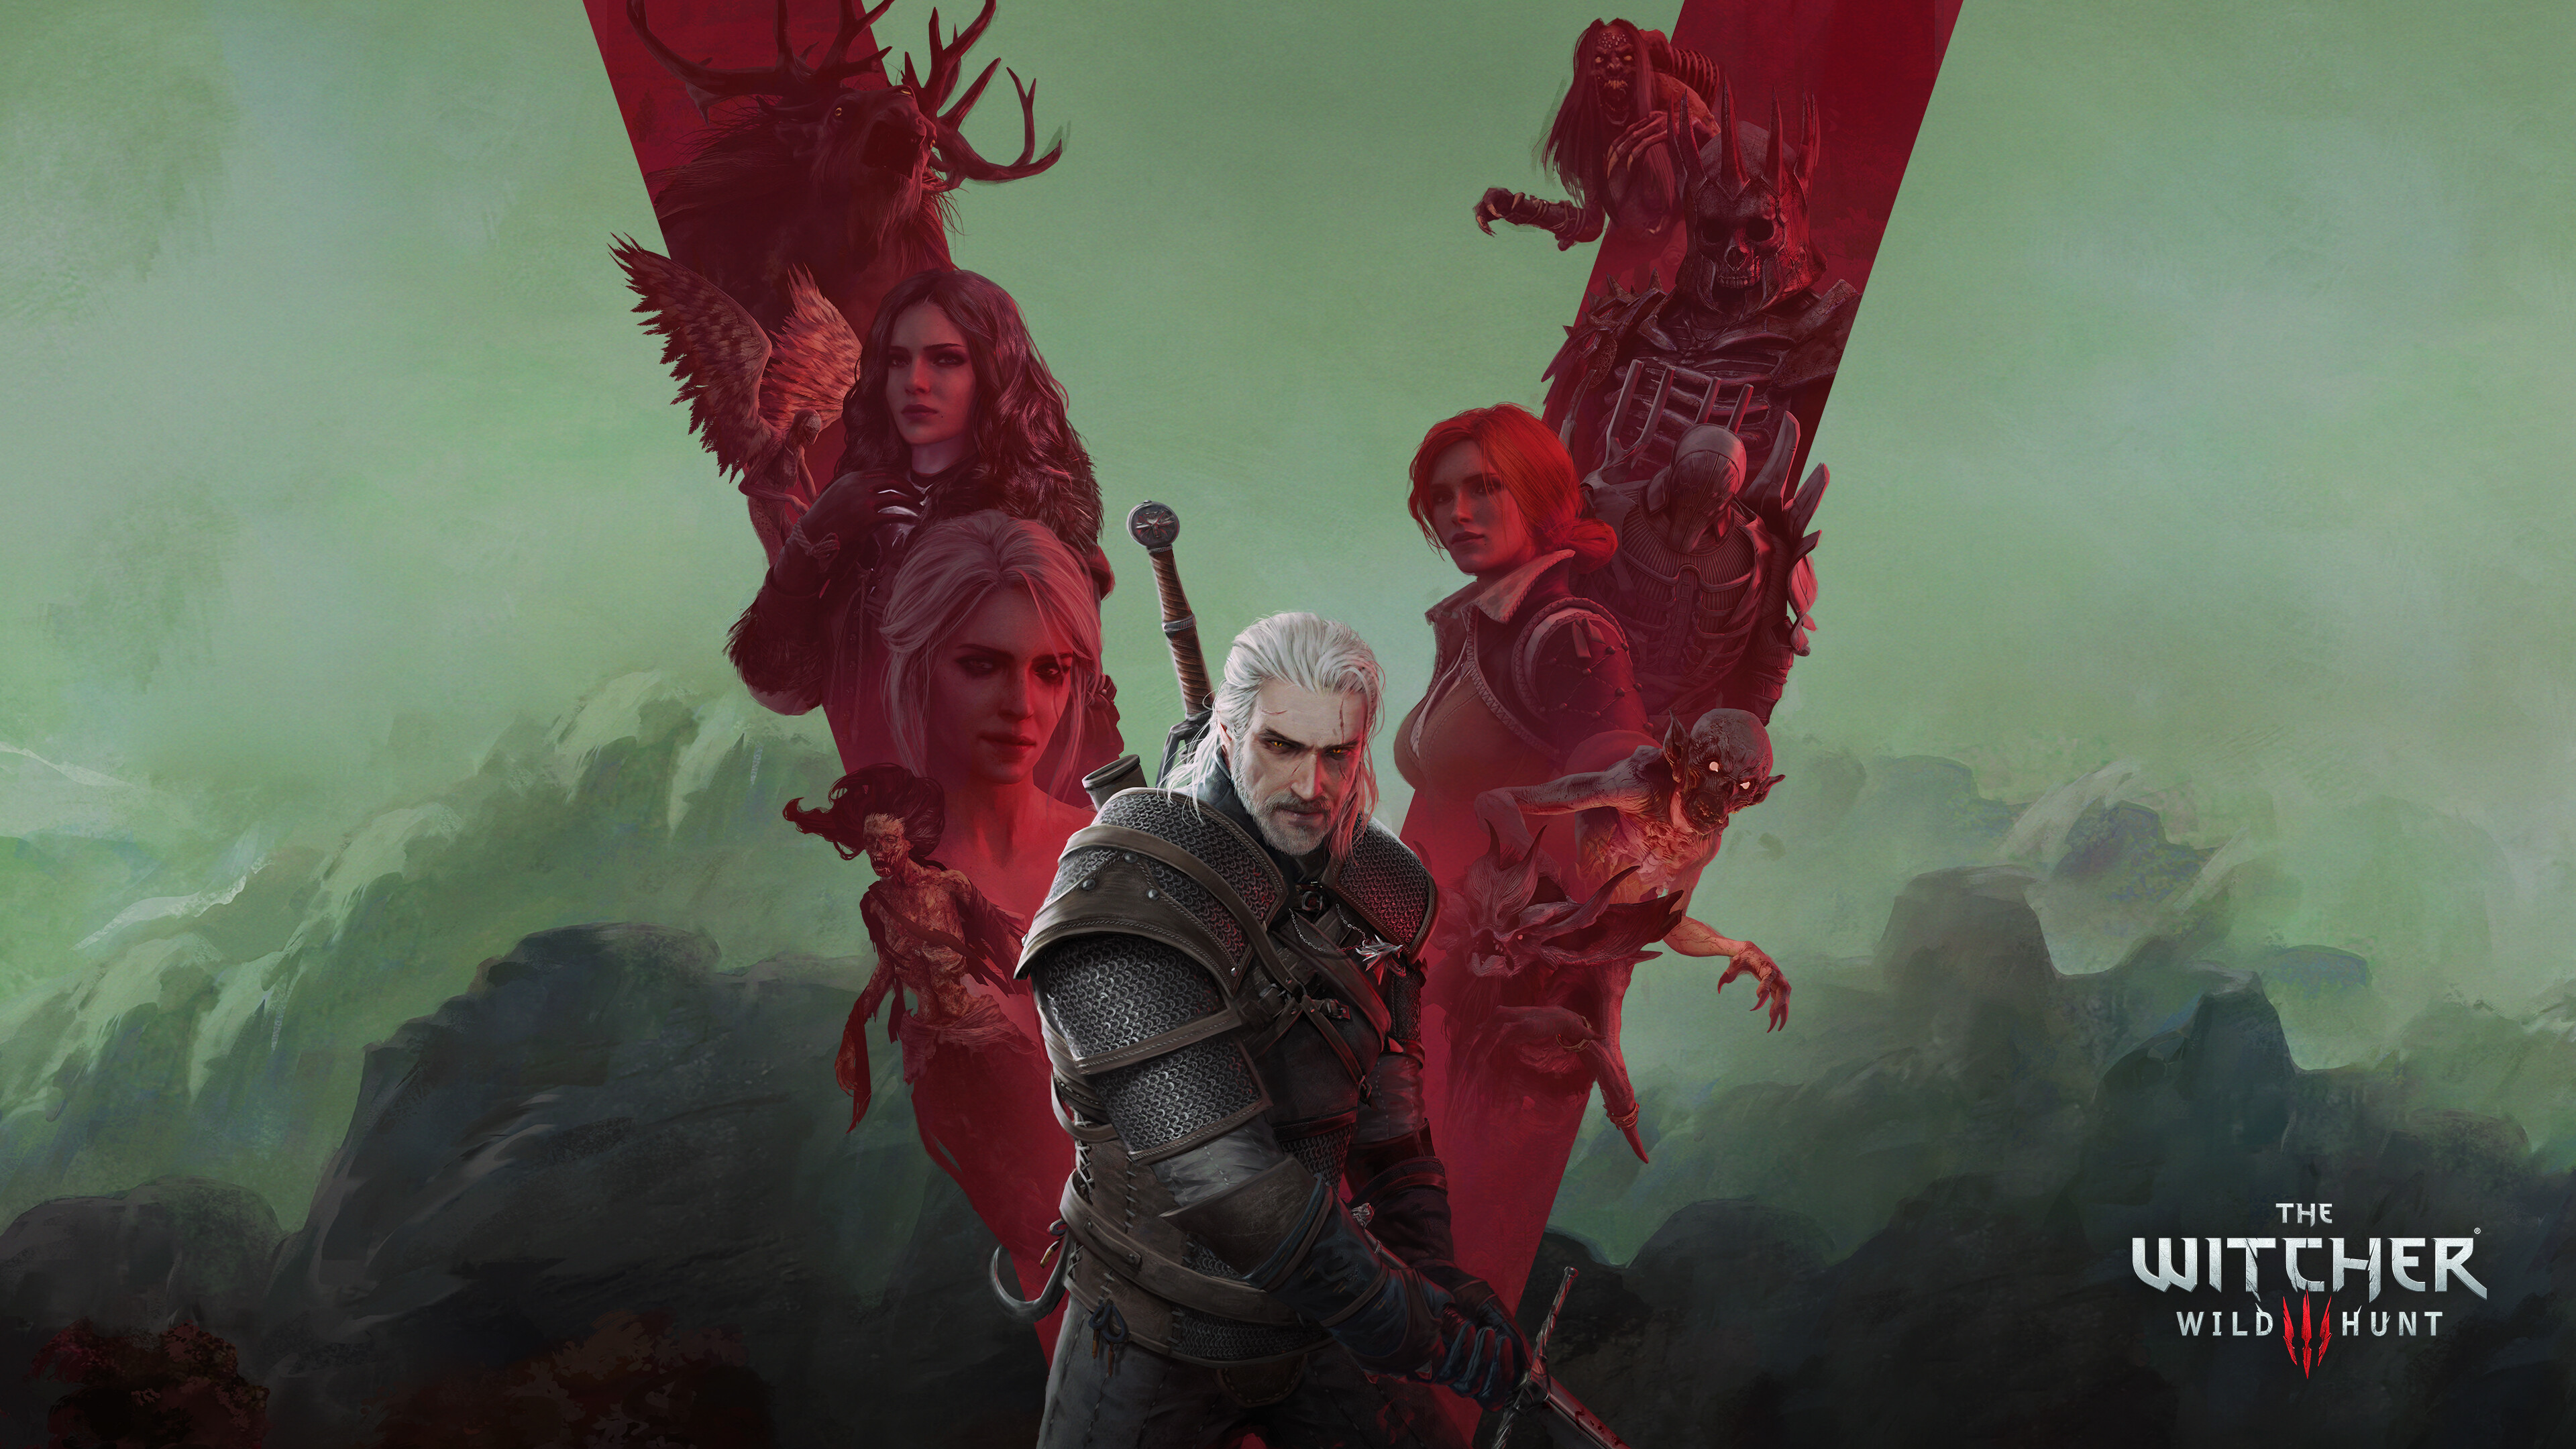 The Witcher (Game): Geralt of Rivia, Yennefer of Vengerberg, a powerful sorceress. 3840x2160 4K Wallpaper.